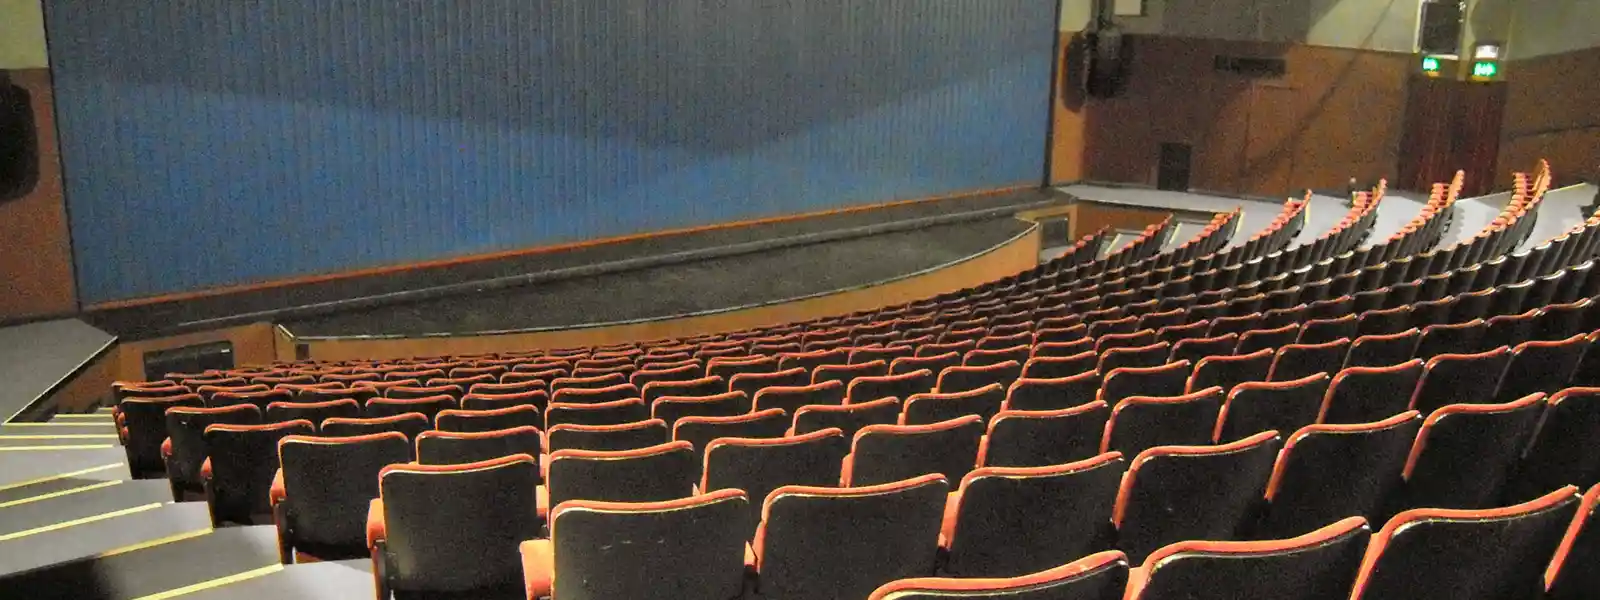 Gordon Craig Theatre Auditorium